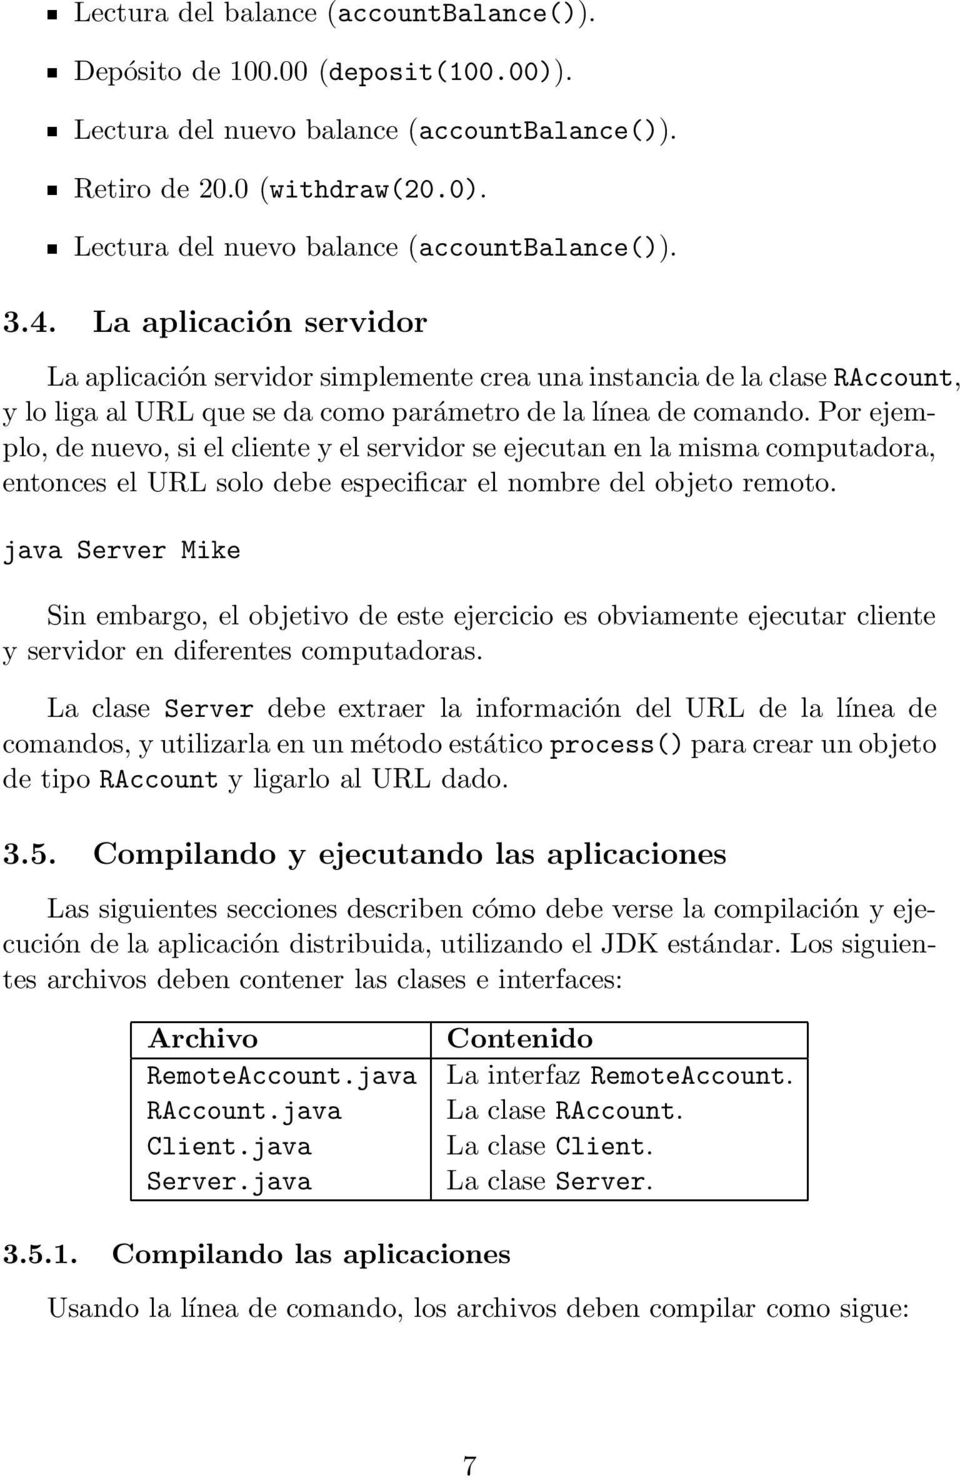 Por ejemplo, de nuevo, si el cliente y el servidor se ejecutan en la misma computadora, entonces el URL solo debe especificar el nombre del objeto remoto.